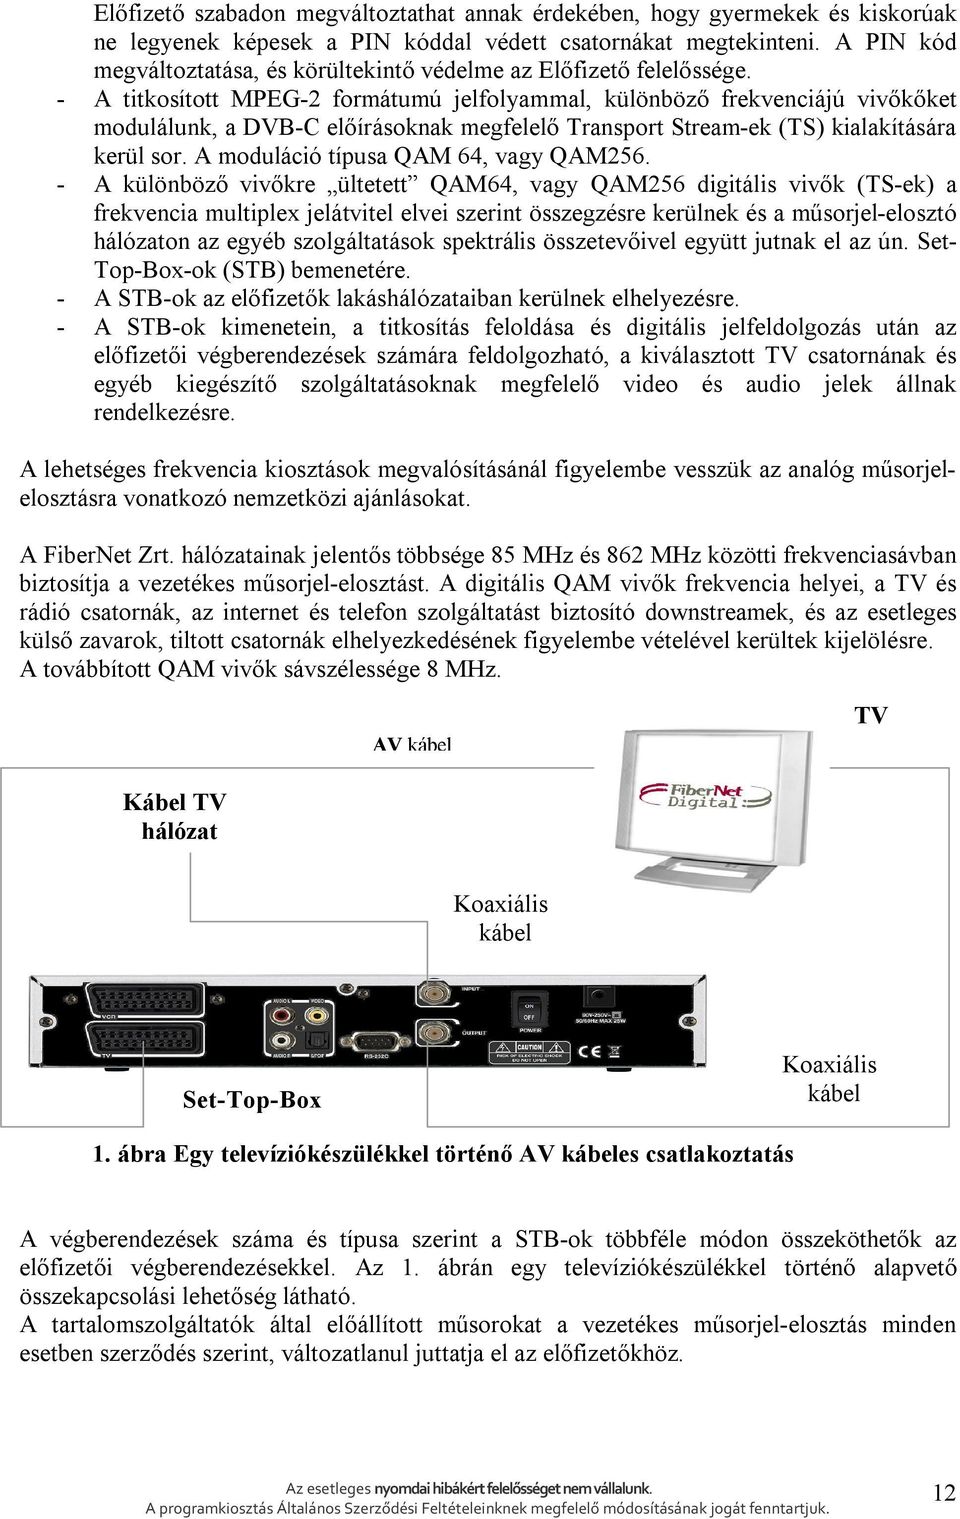 - A titkosított MPEG-2 formátumú jelfolyammal, különböző frekvenciájú vivőkőket modulálunk, a DVB-C előírásoknak megfelelő Transport Stream-ek (TS) kialakítására kerül sor.